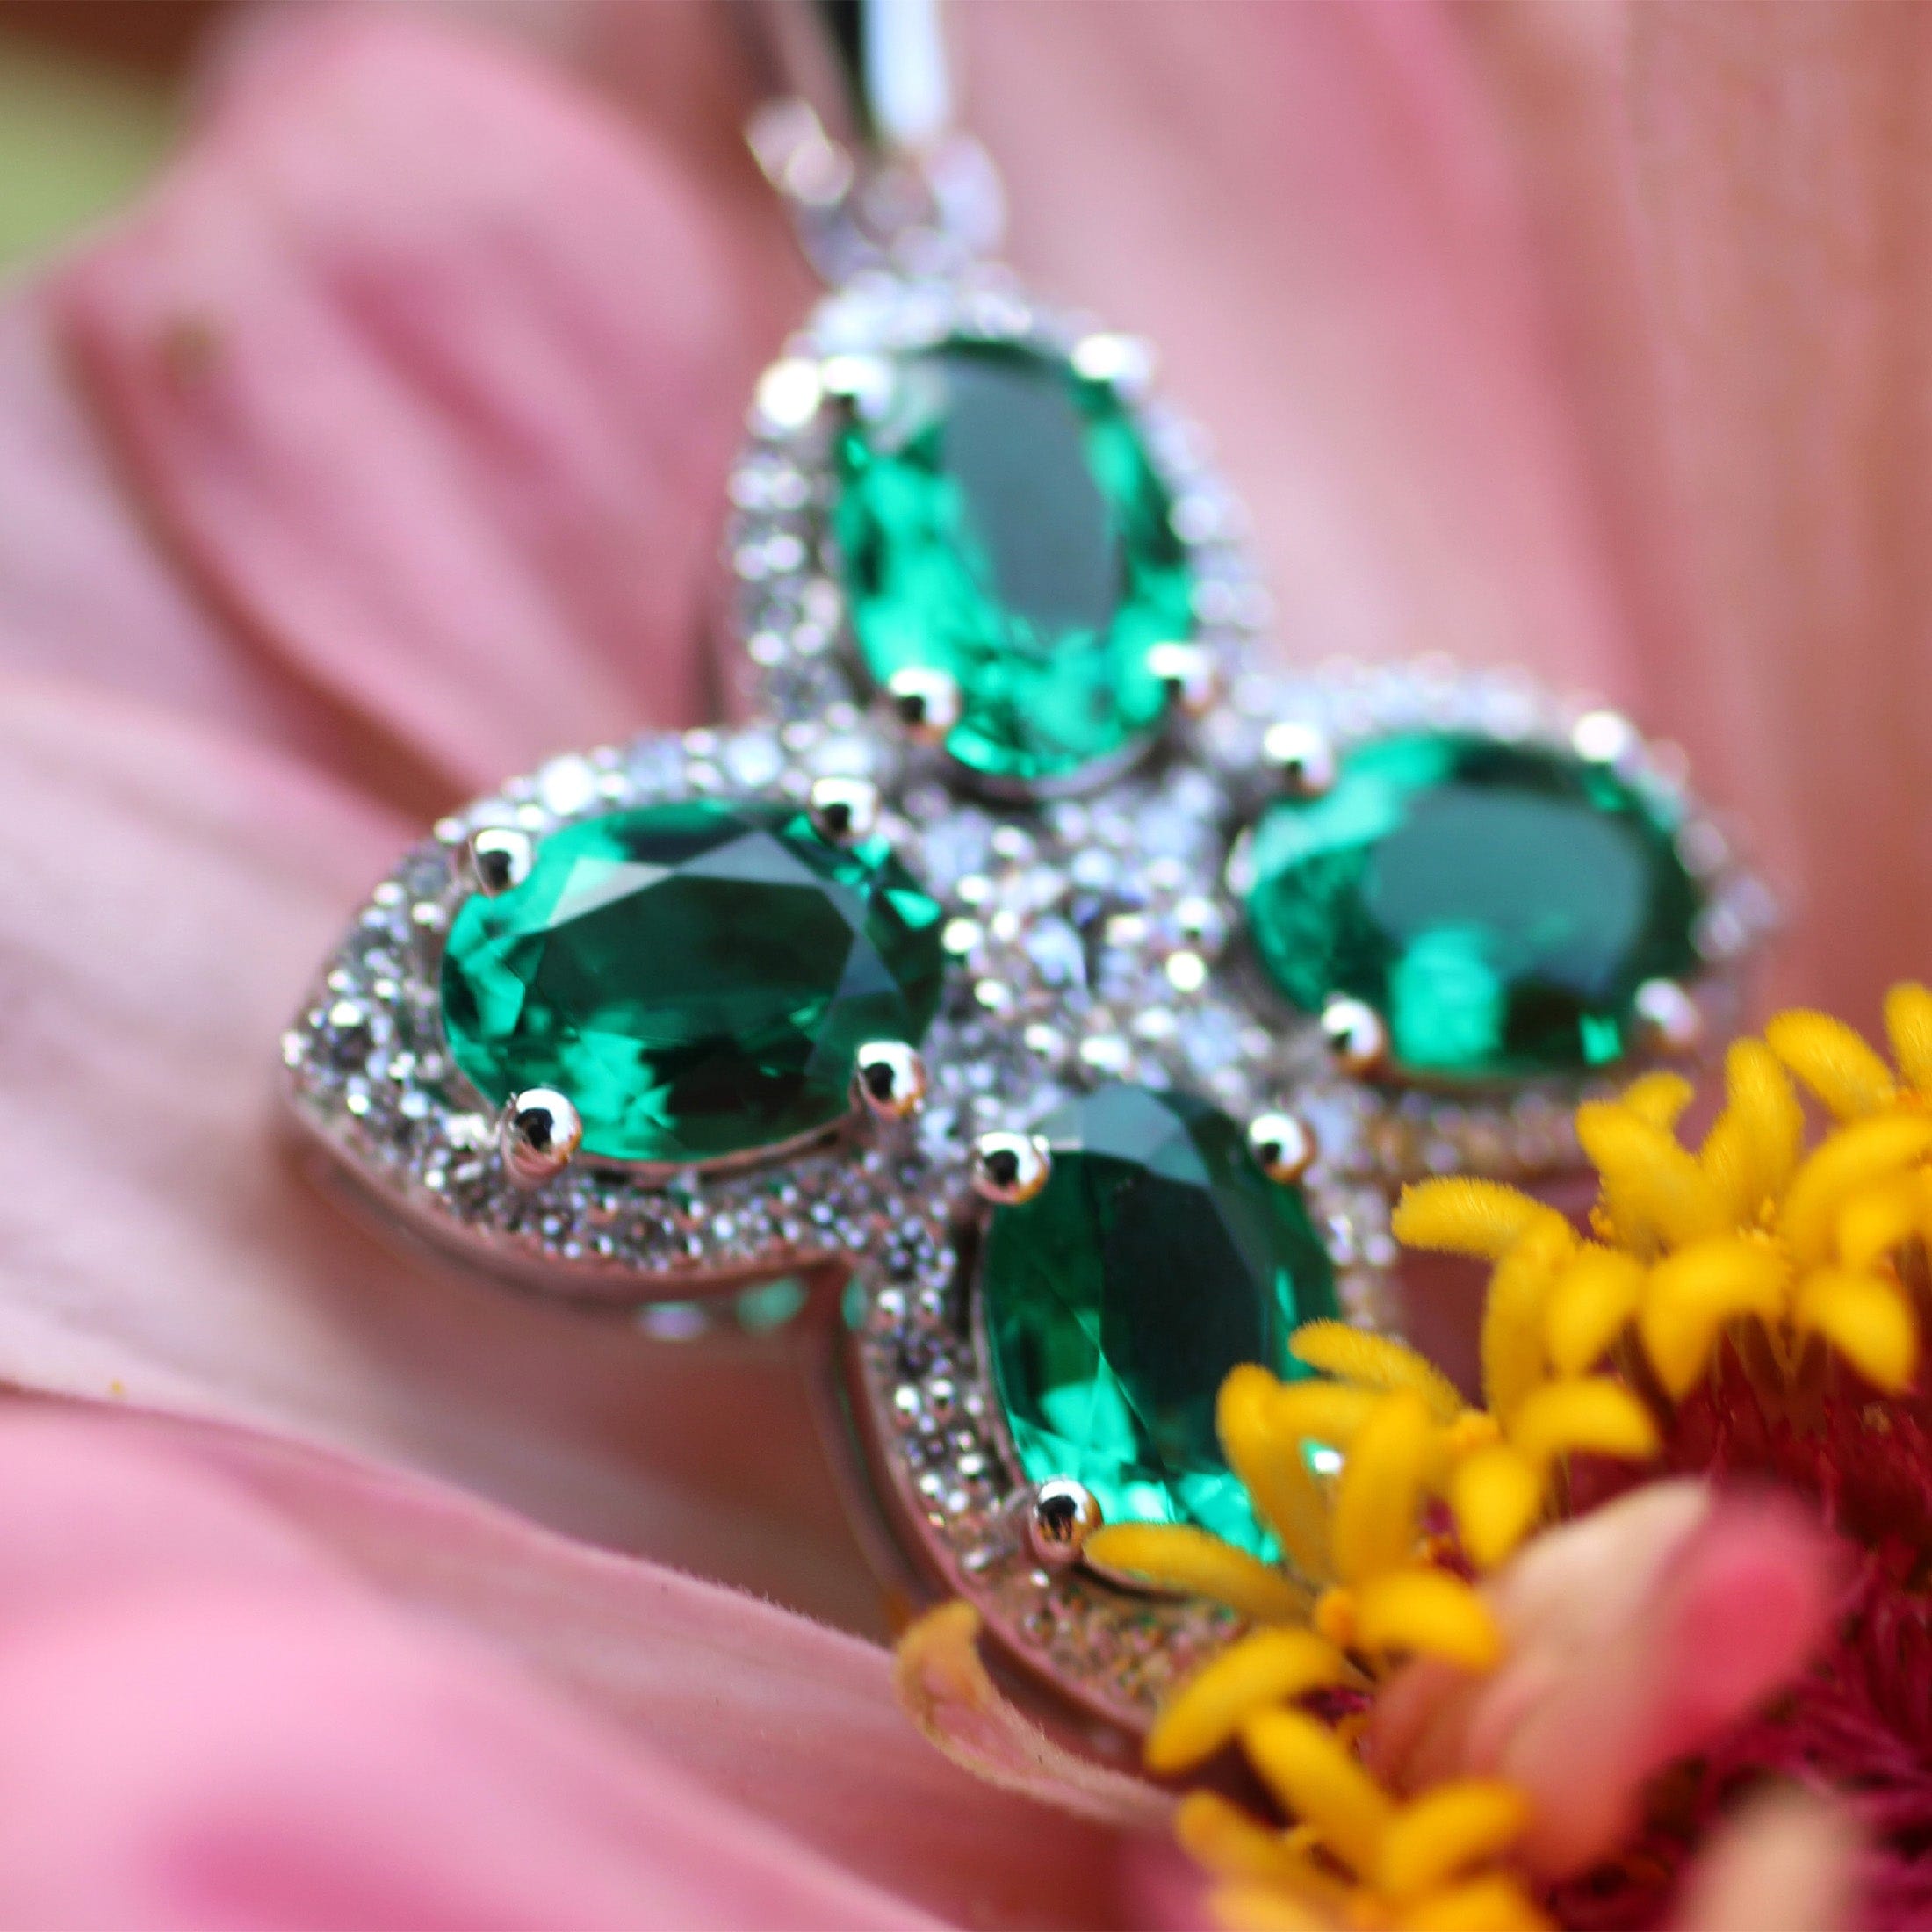 PT950 Emerald & Diamond Four leaf Clover Necklace